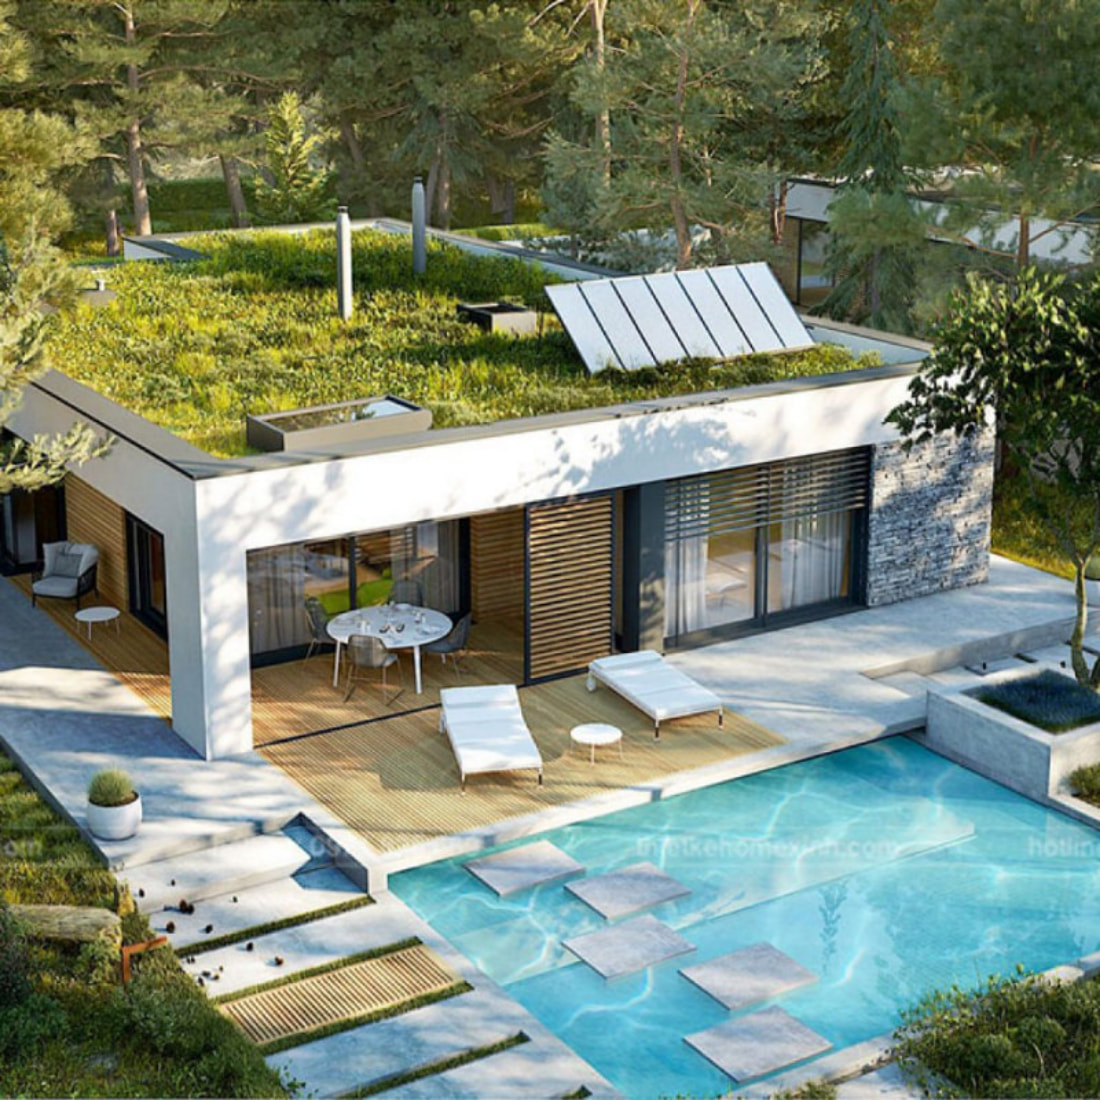 Bể bơi ngoài trời thiết kế độc đáo tạo nên không gian thư giãn, giải trí lý tưởng cho cả gia đình đồng thời góp phần tô điểm cho vẻ đẹp của ngôi nhà 1 tầng mái bằng hiện đại